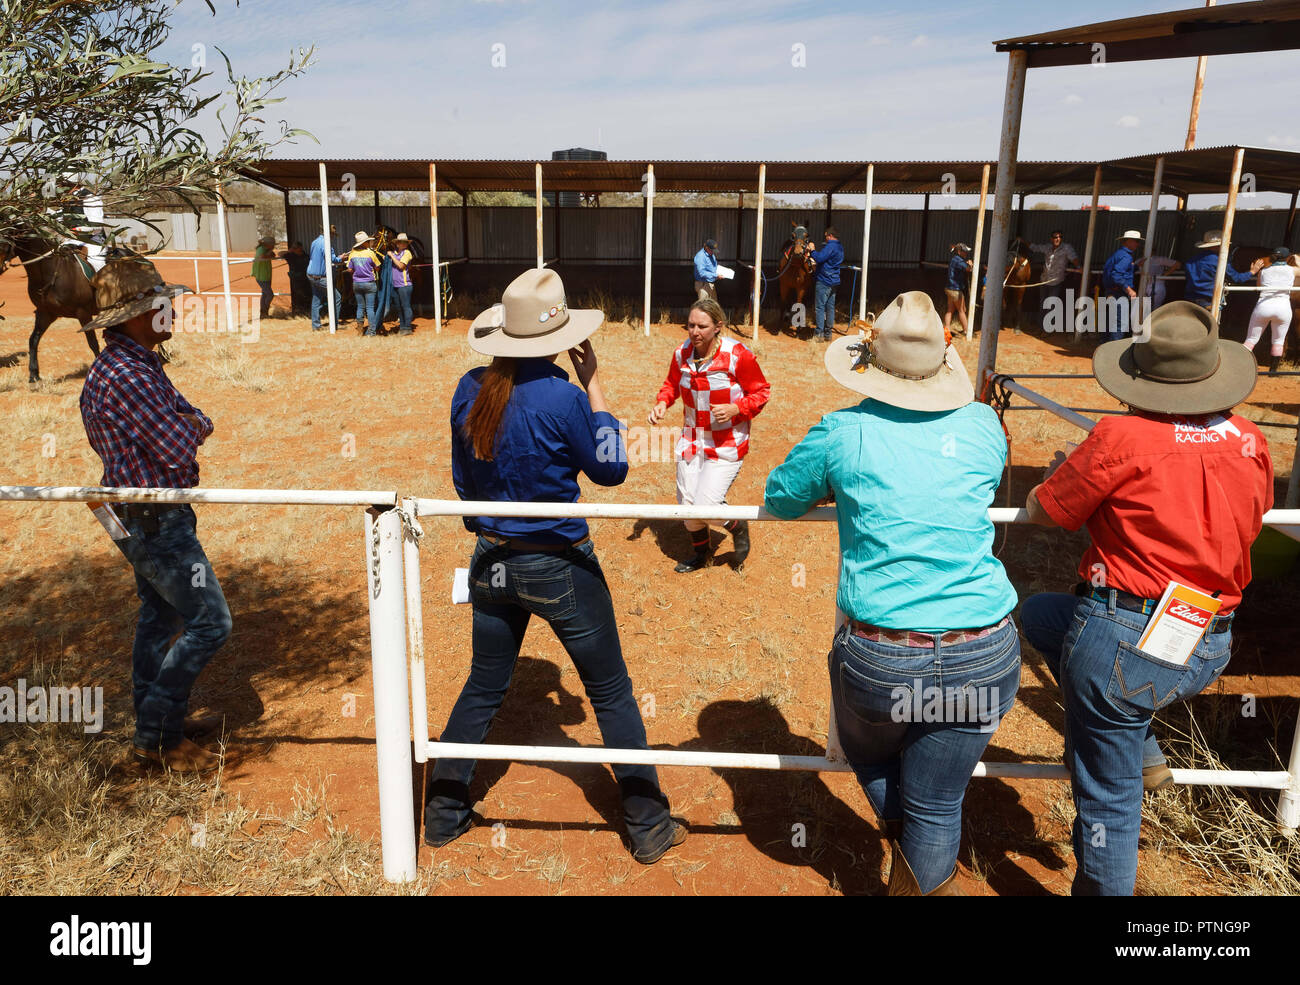 Los espectadores ver las carreras de caballos en Landor, 1000km al norte de Perth, Australia Occidental. Foto de stock